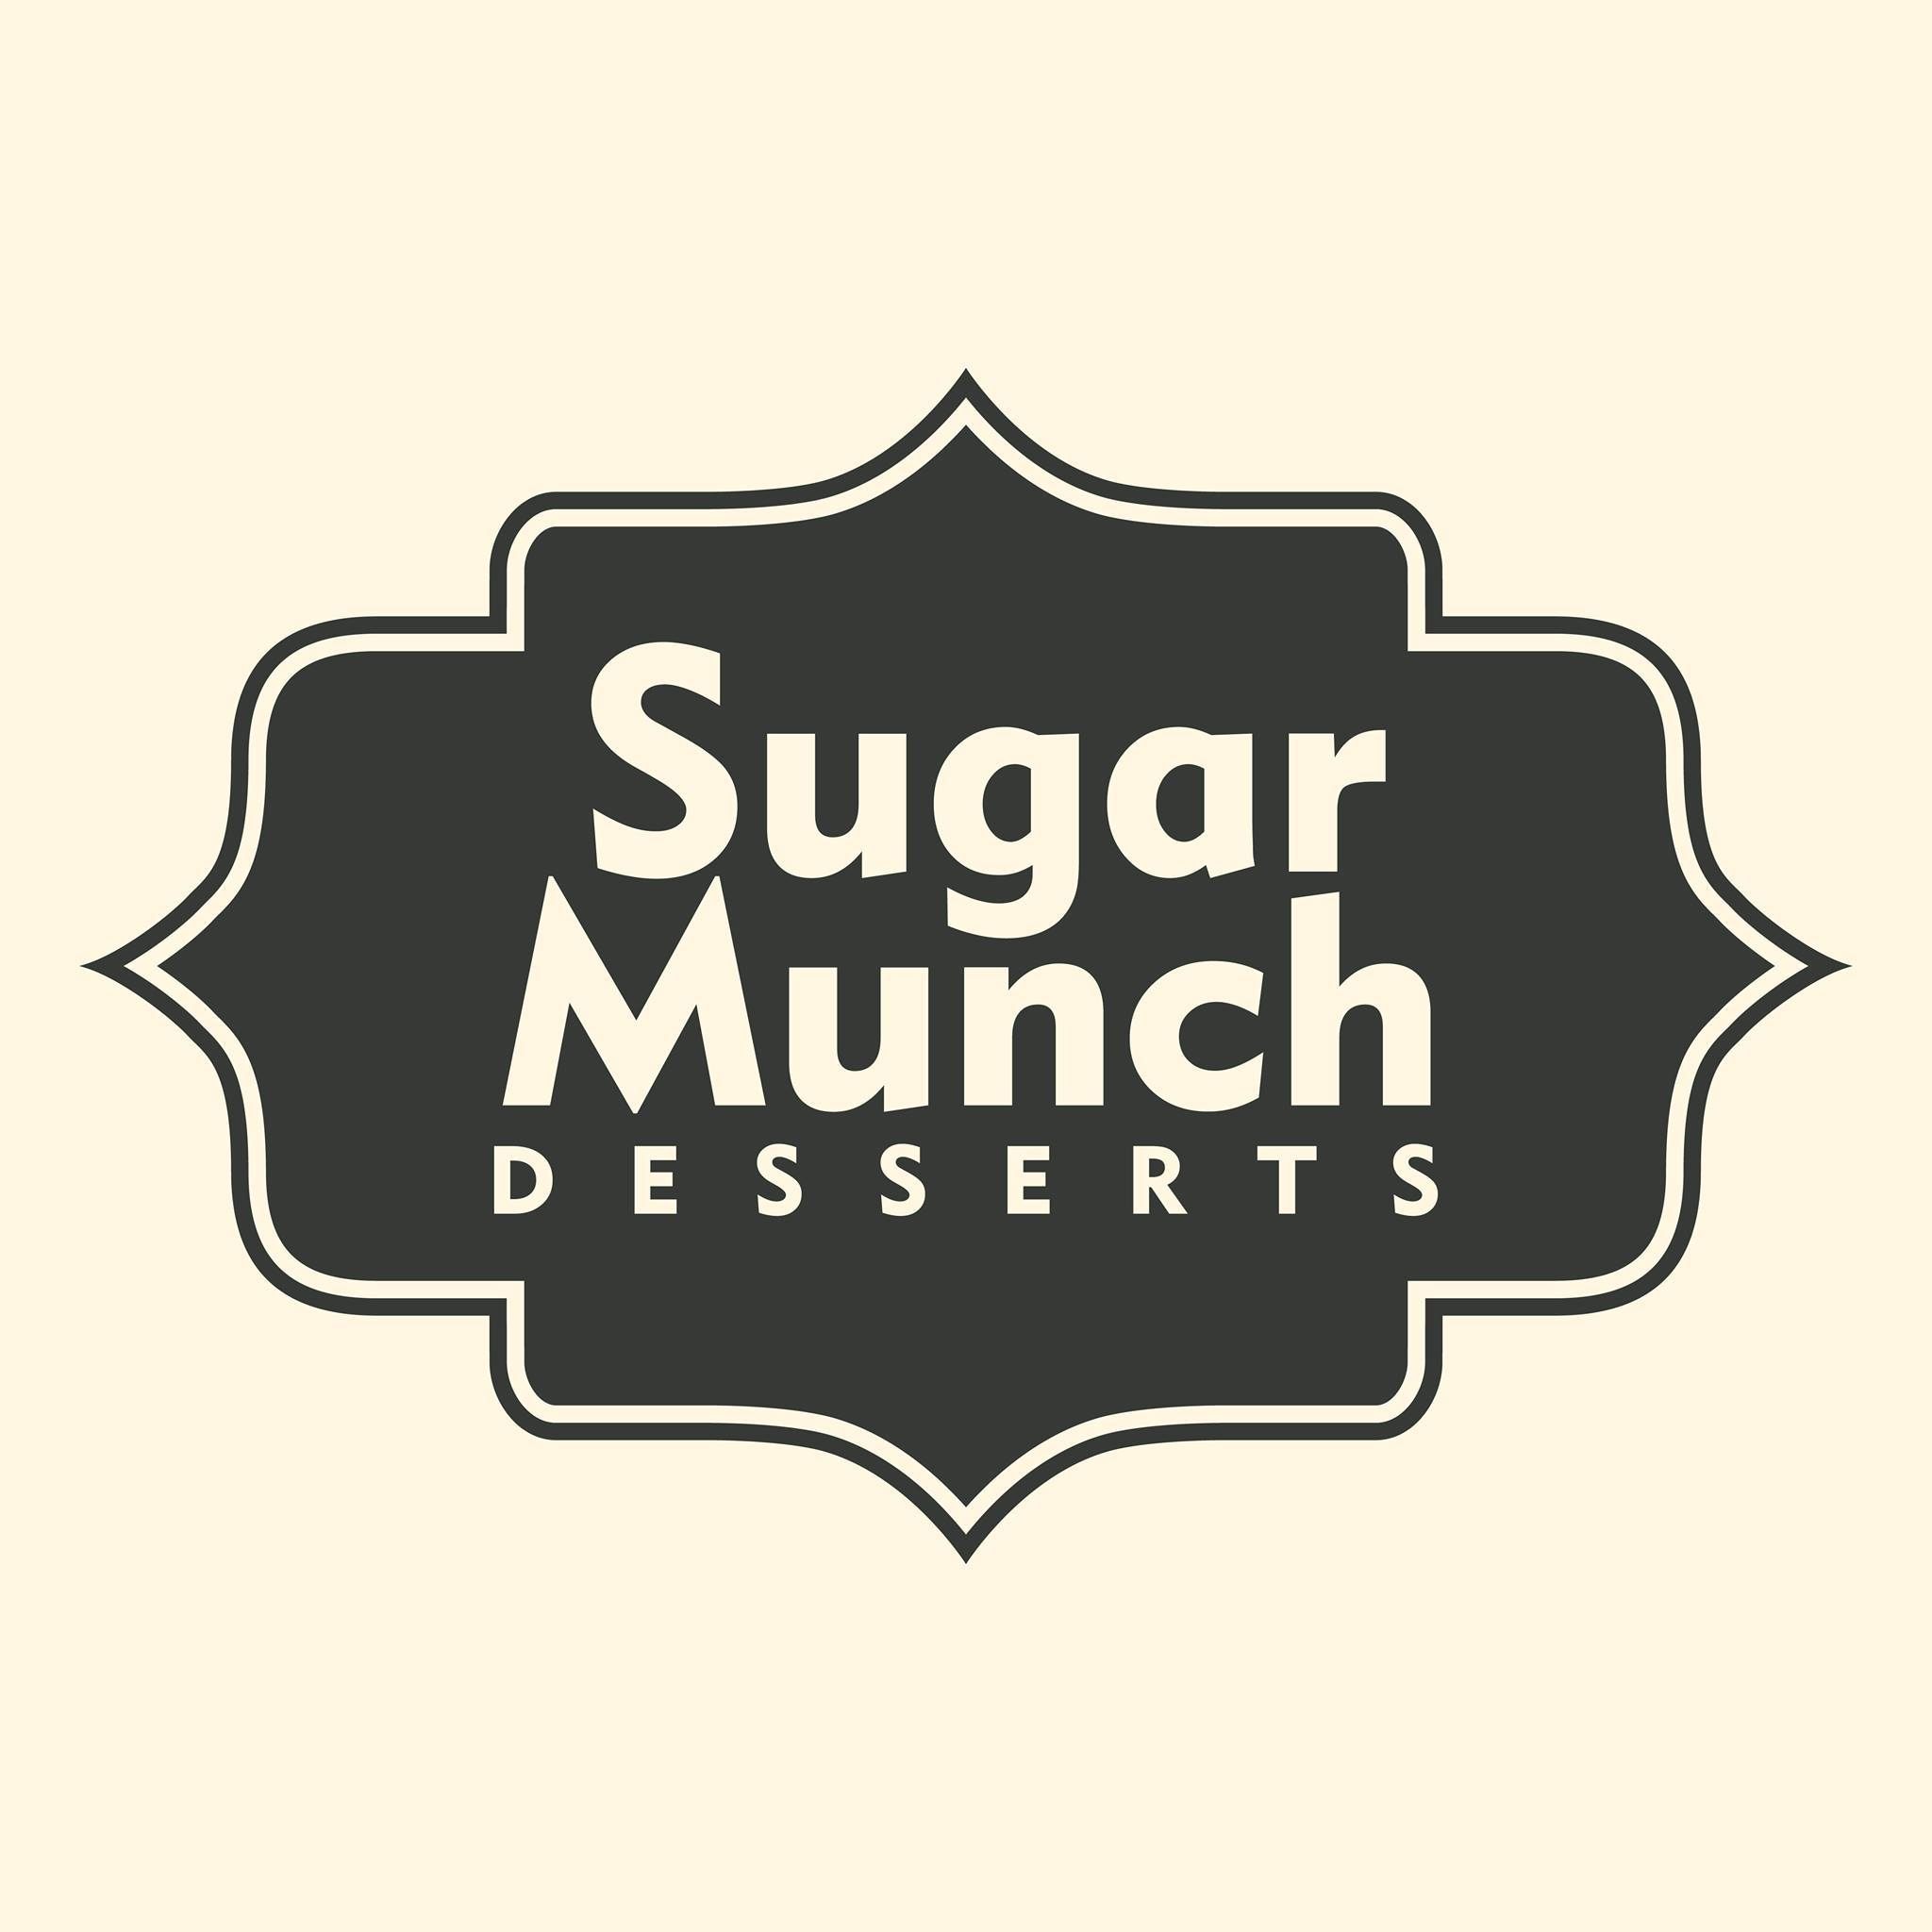 SugarMunch Desserts 1 profile